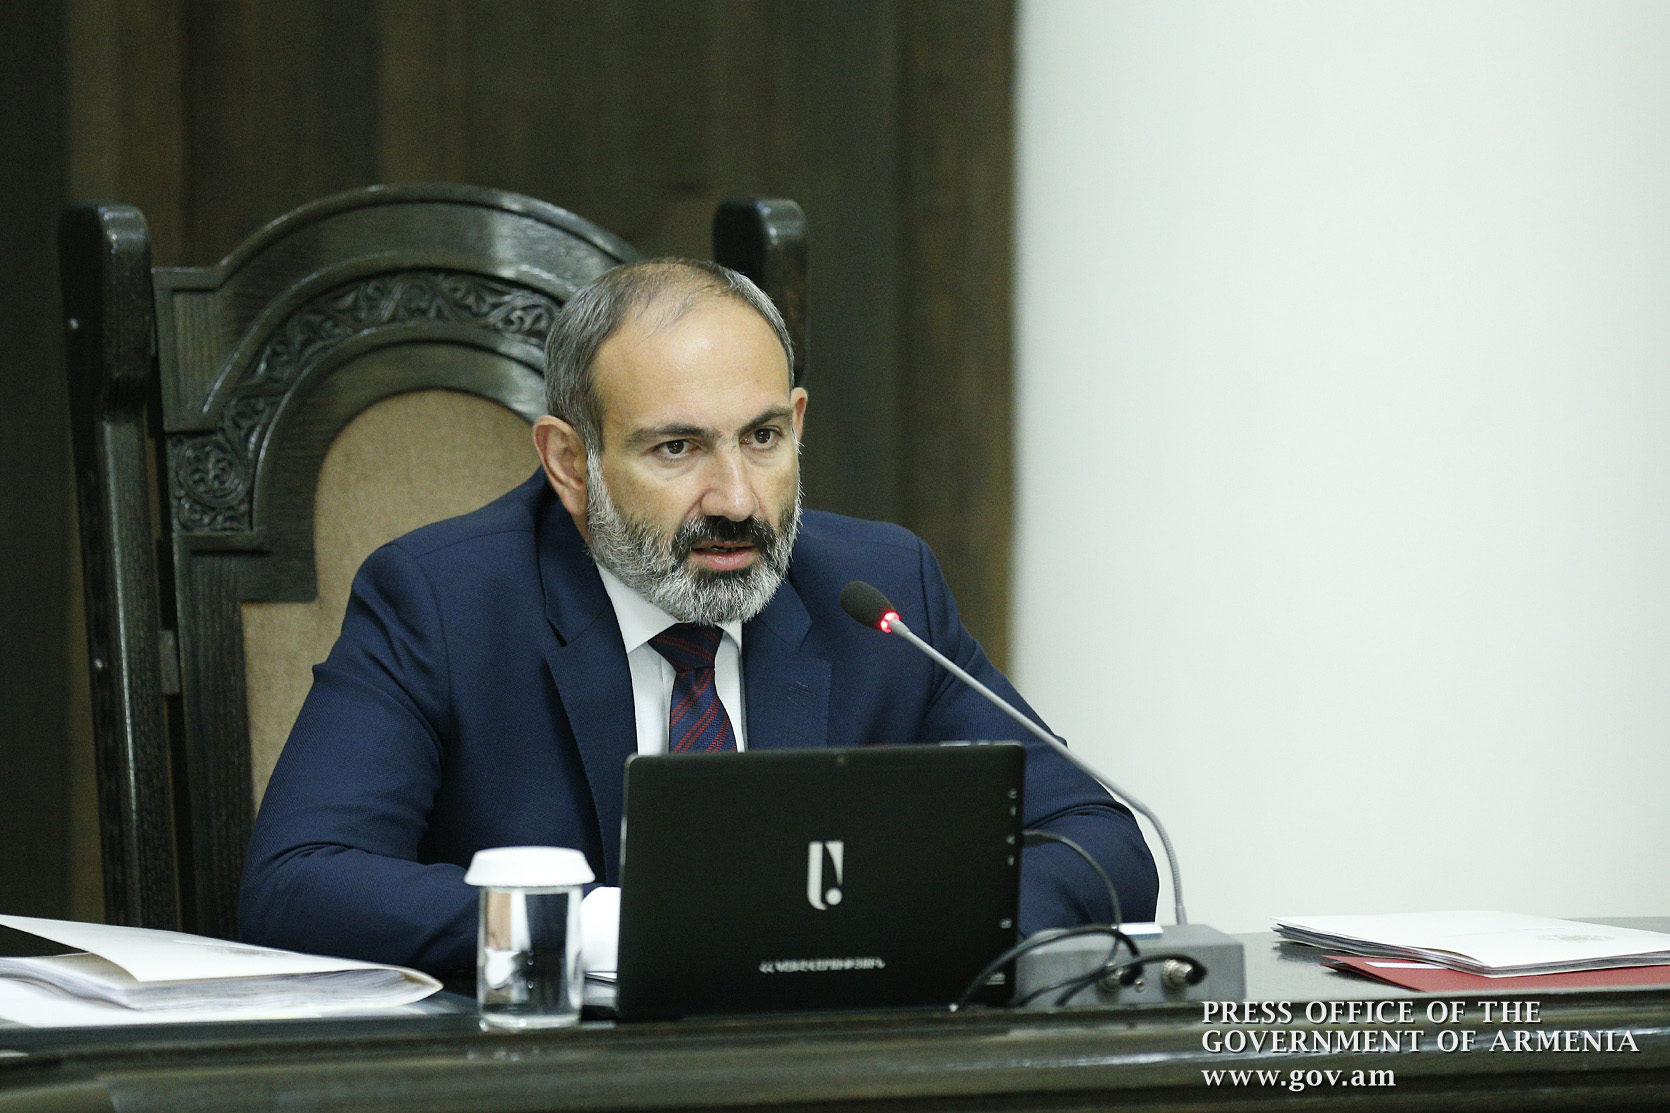 Пашинян: Ради финансовой помощи ЕС Армения ничего не делала и не намерена делать